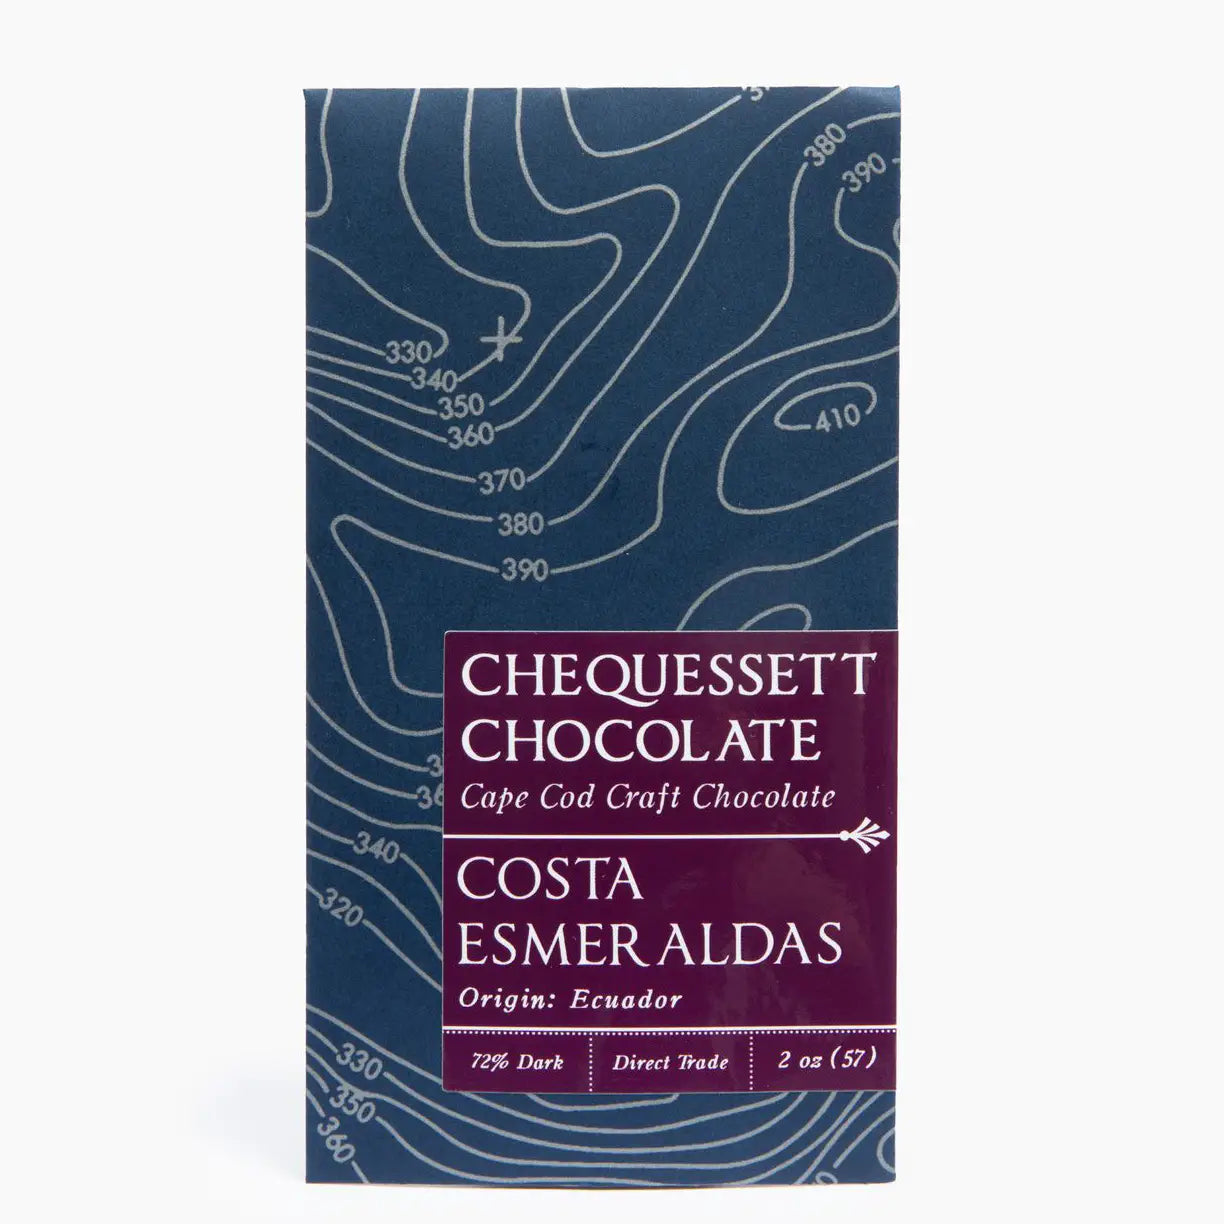 Chequessett Chocolate - Costa Esmeraldas